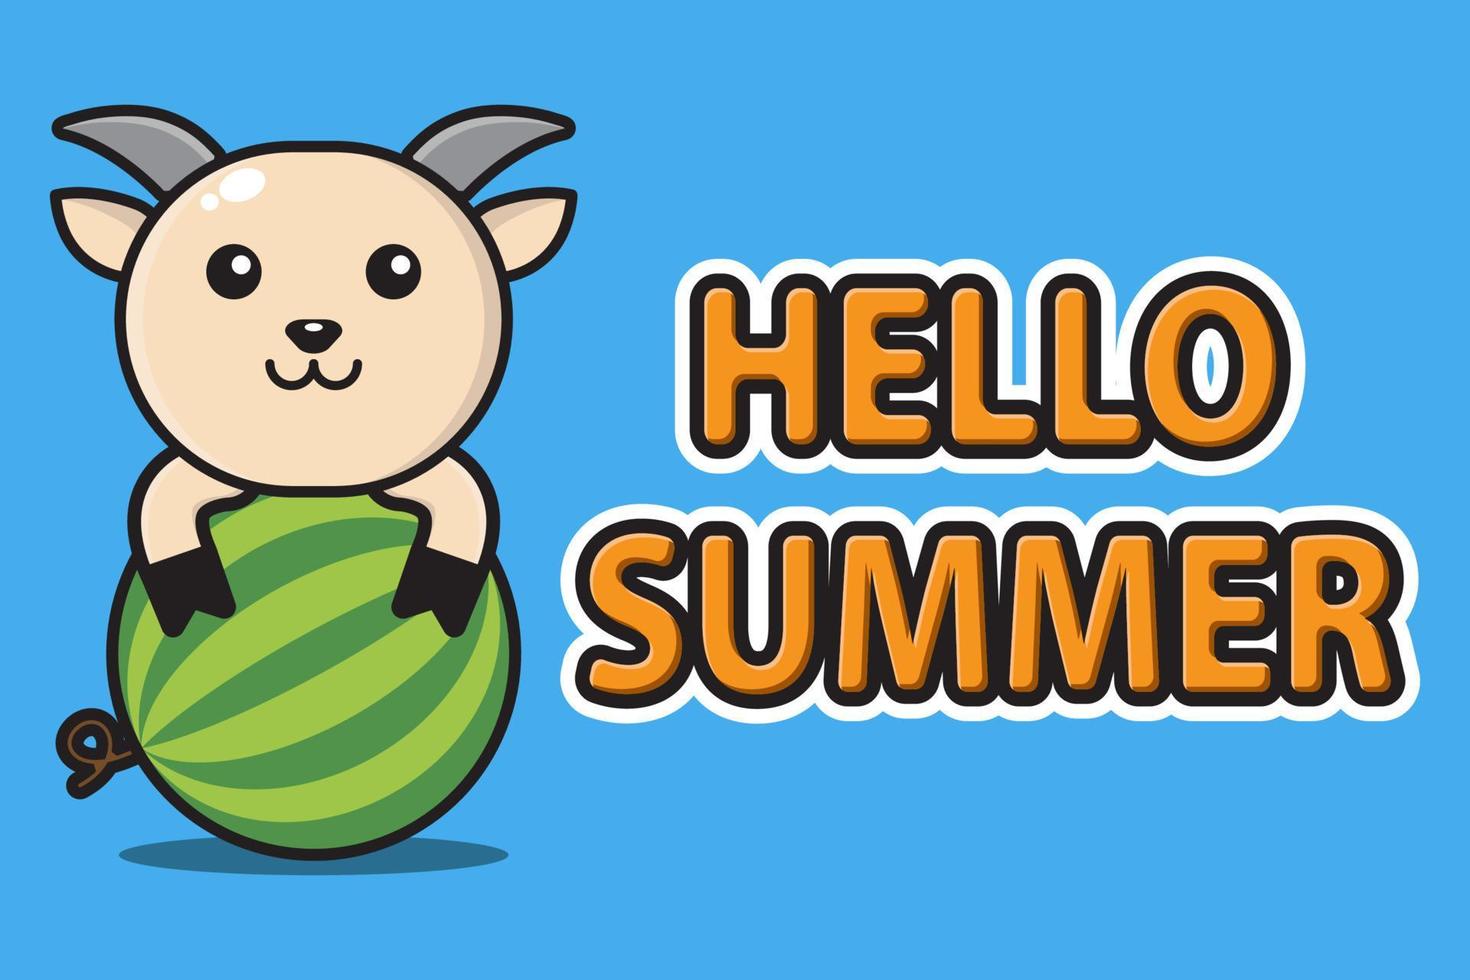 süße Maskottchen Ziege umarmt Wassermelone mit Hallo Sommergrußbanner vektor